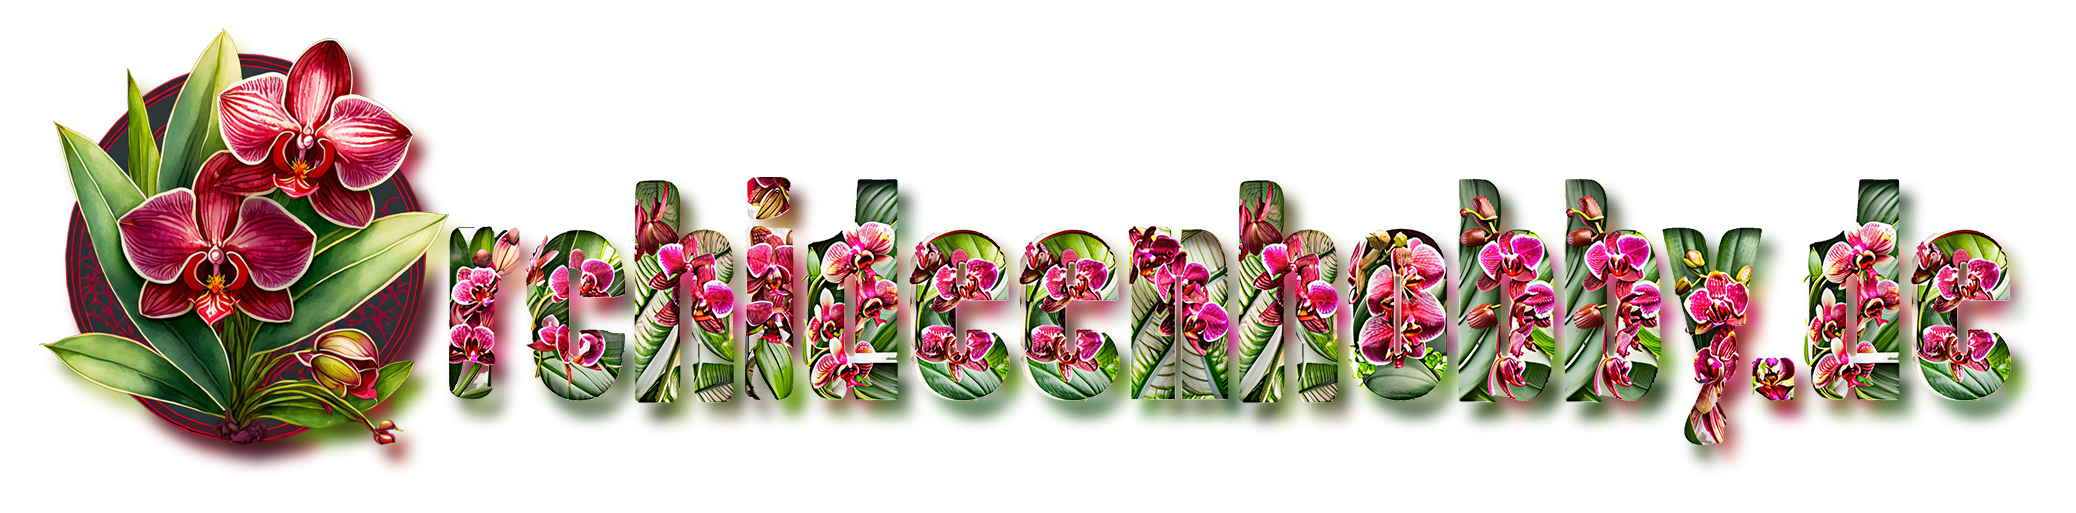 Firefly Hintergrund Für Eine Webseite über Orchideen Mit Bunten Blüten Und Realistischen Blättern 32